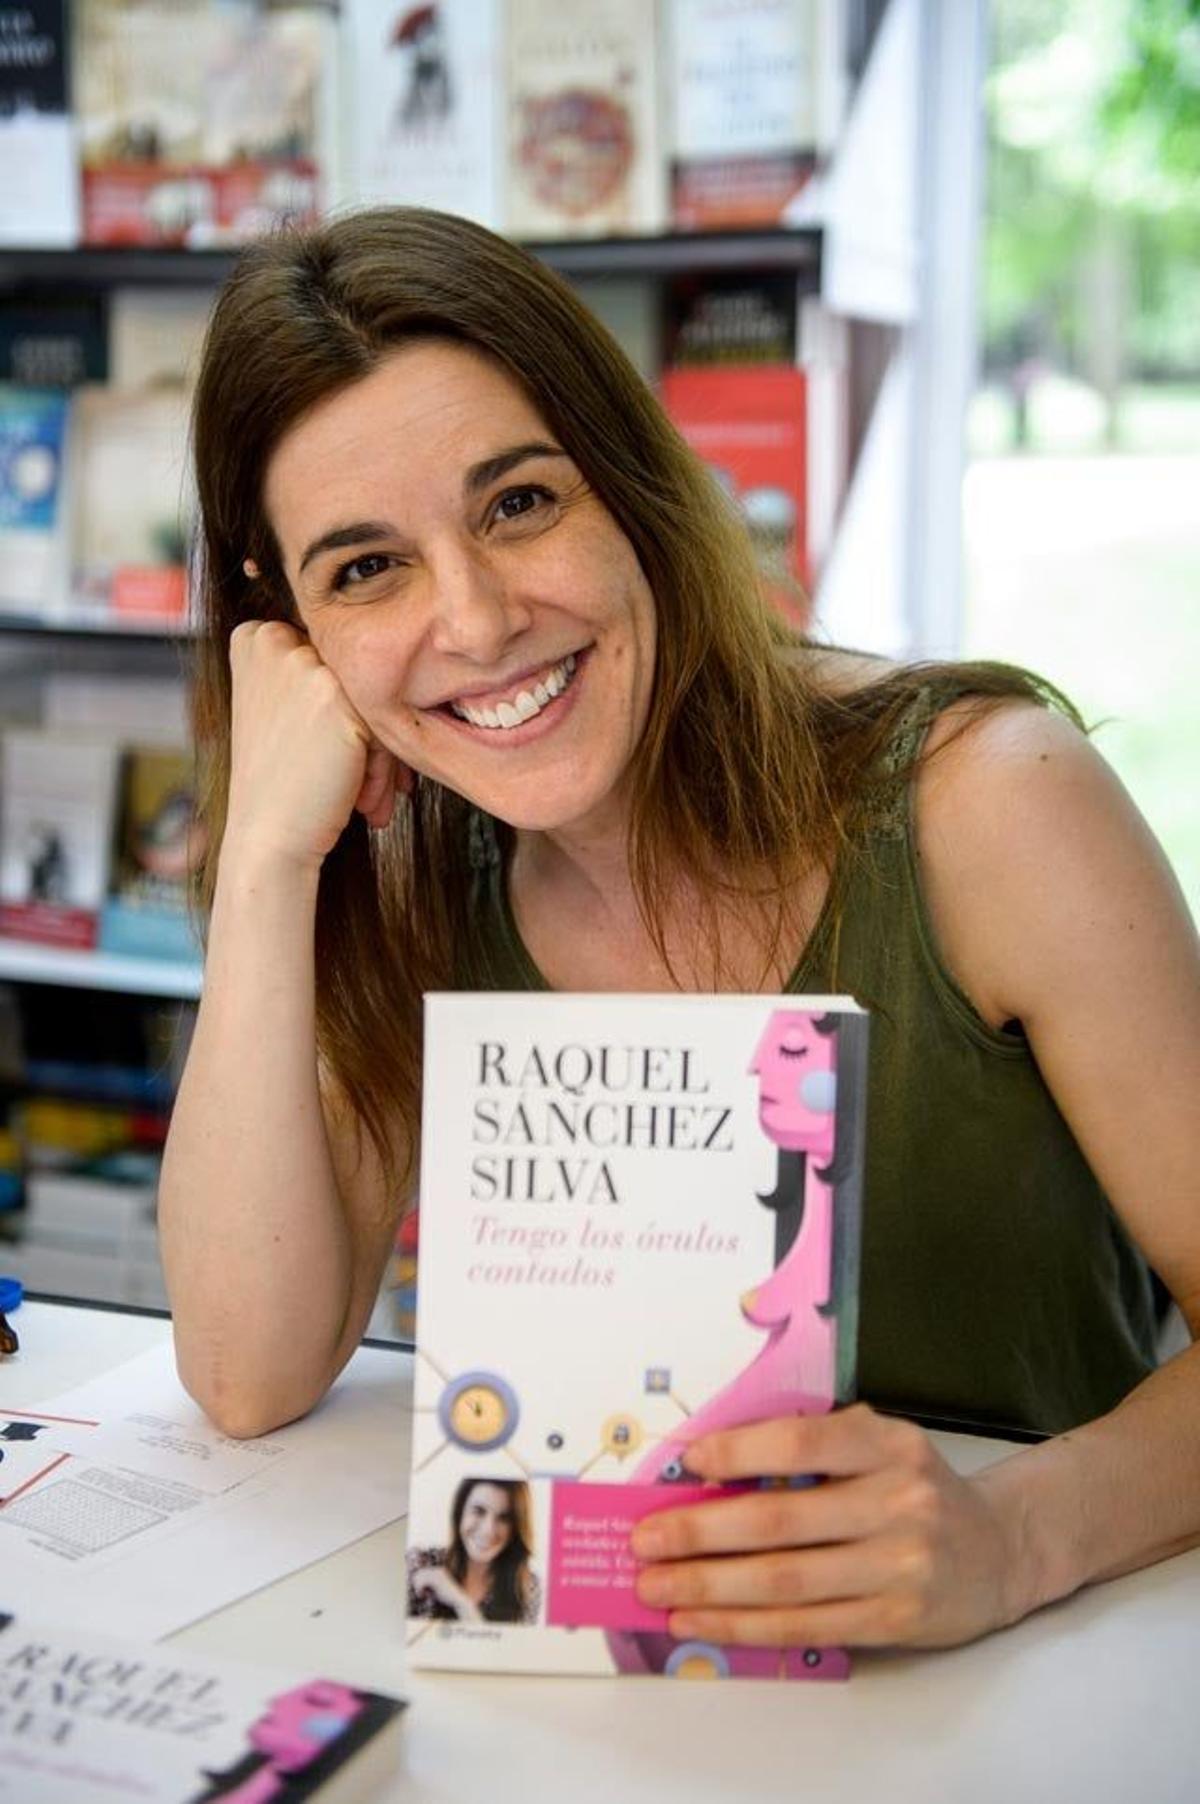 Raquel Sánchez Silva posa sonriente junto a su libro Tengo los óvulos contados en la Feria del Libro de Madrid.